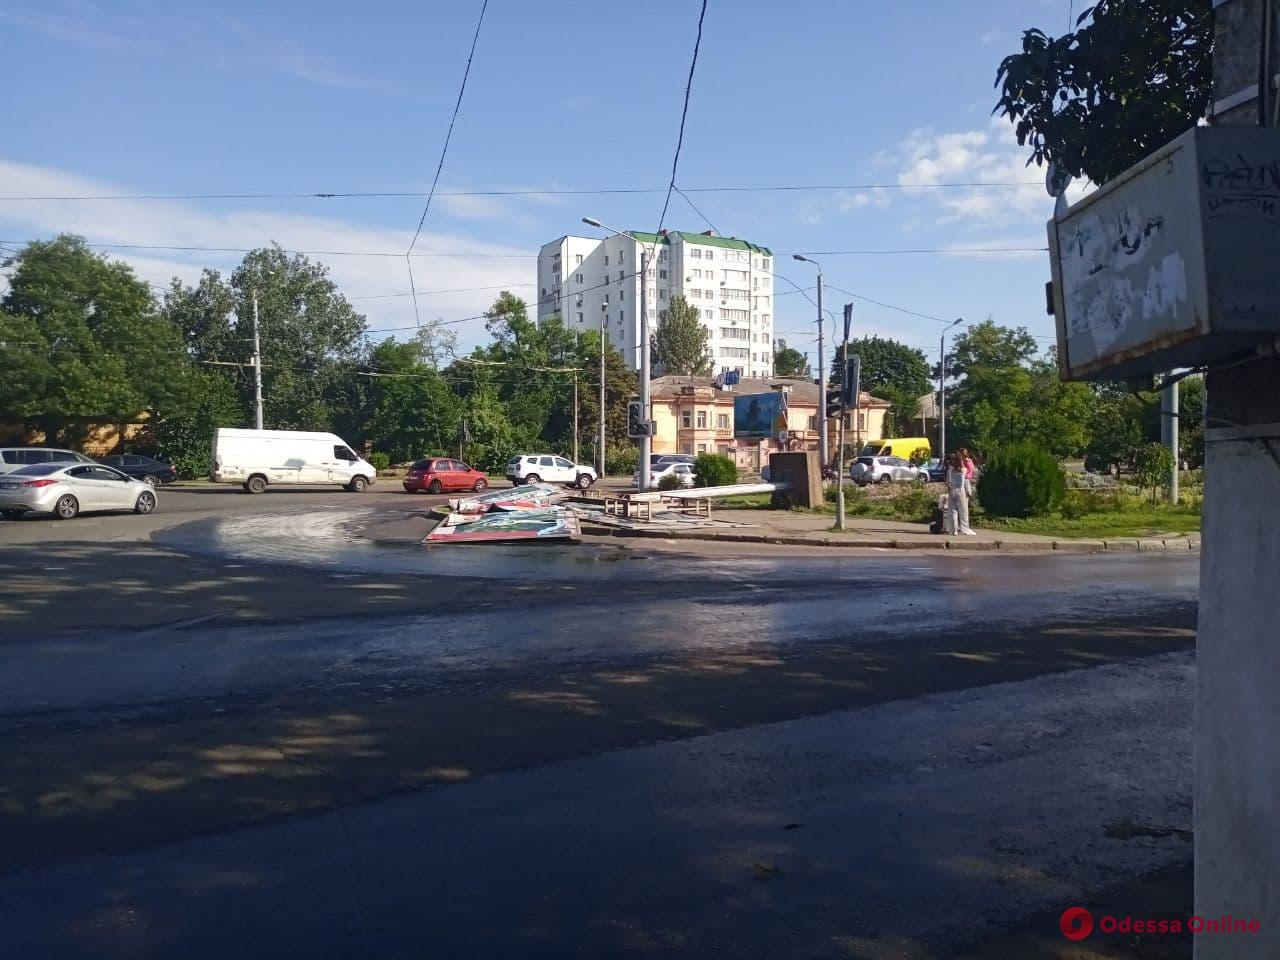 Последствия непогоды: подтопленные улицы, парализованное движение трамваев и заблокированный проезд на поселок Котовского (обновлено)